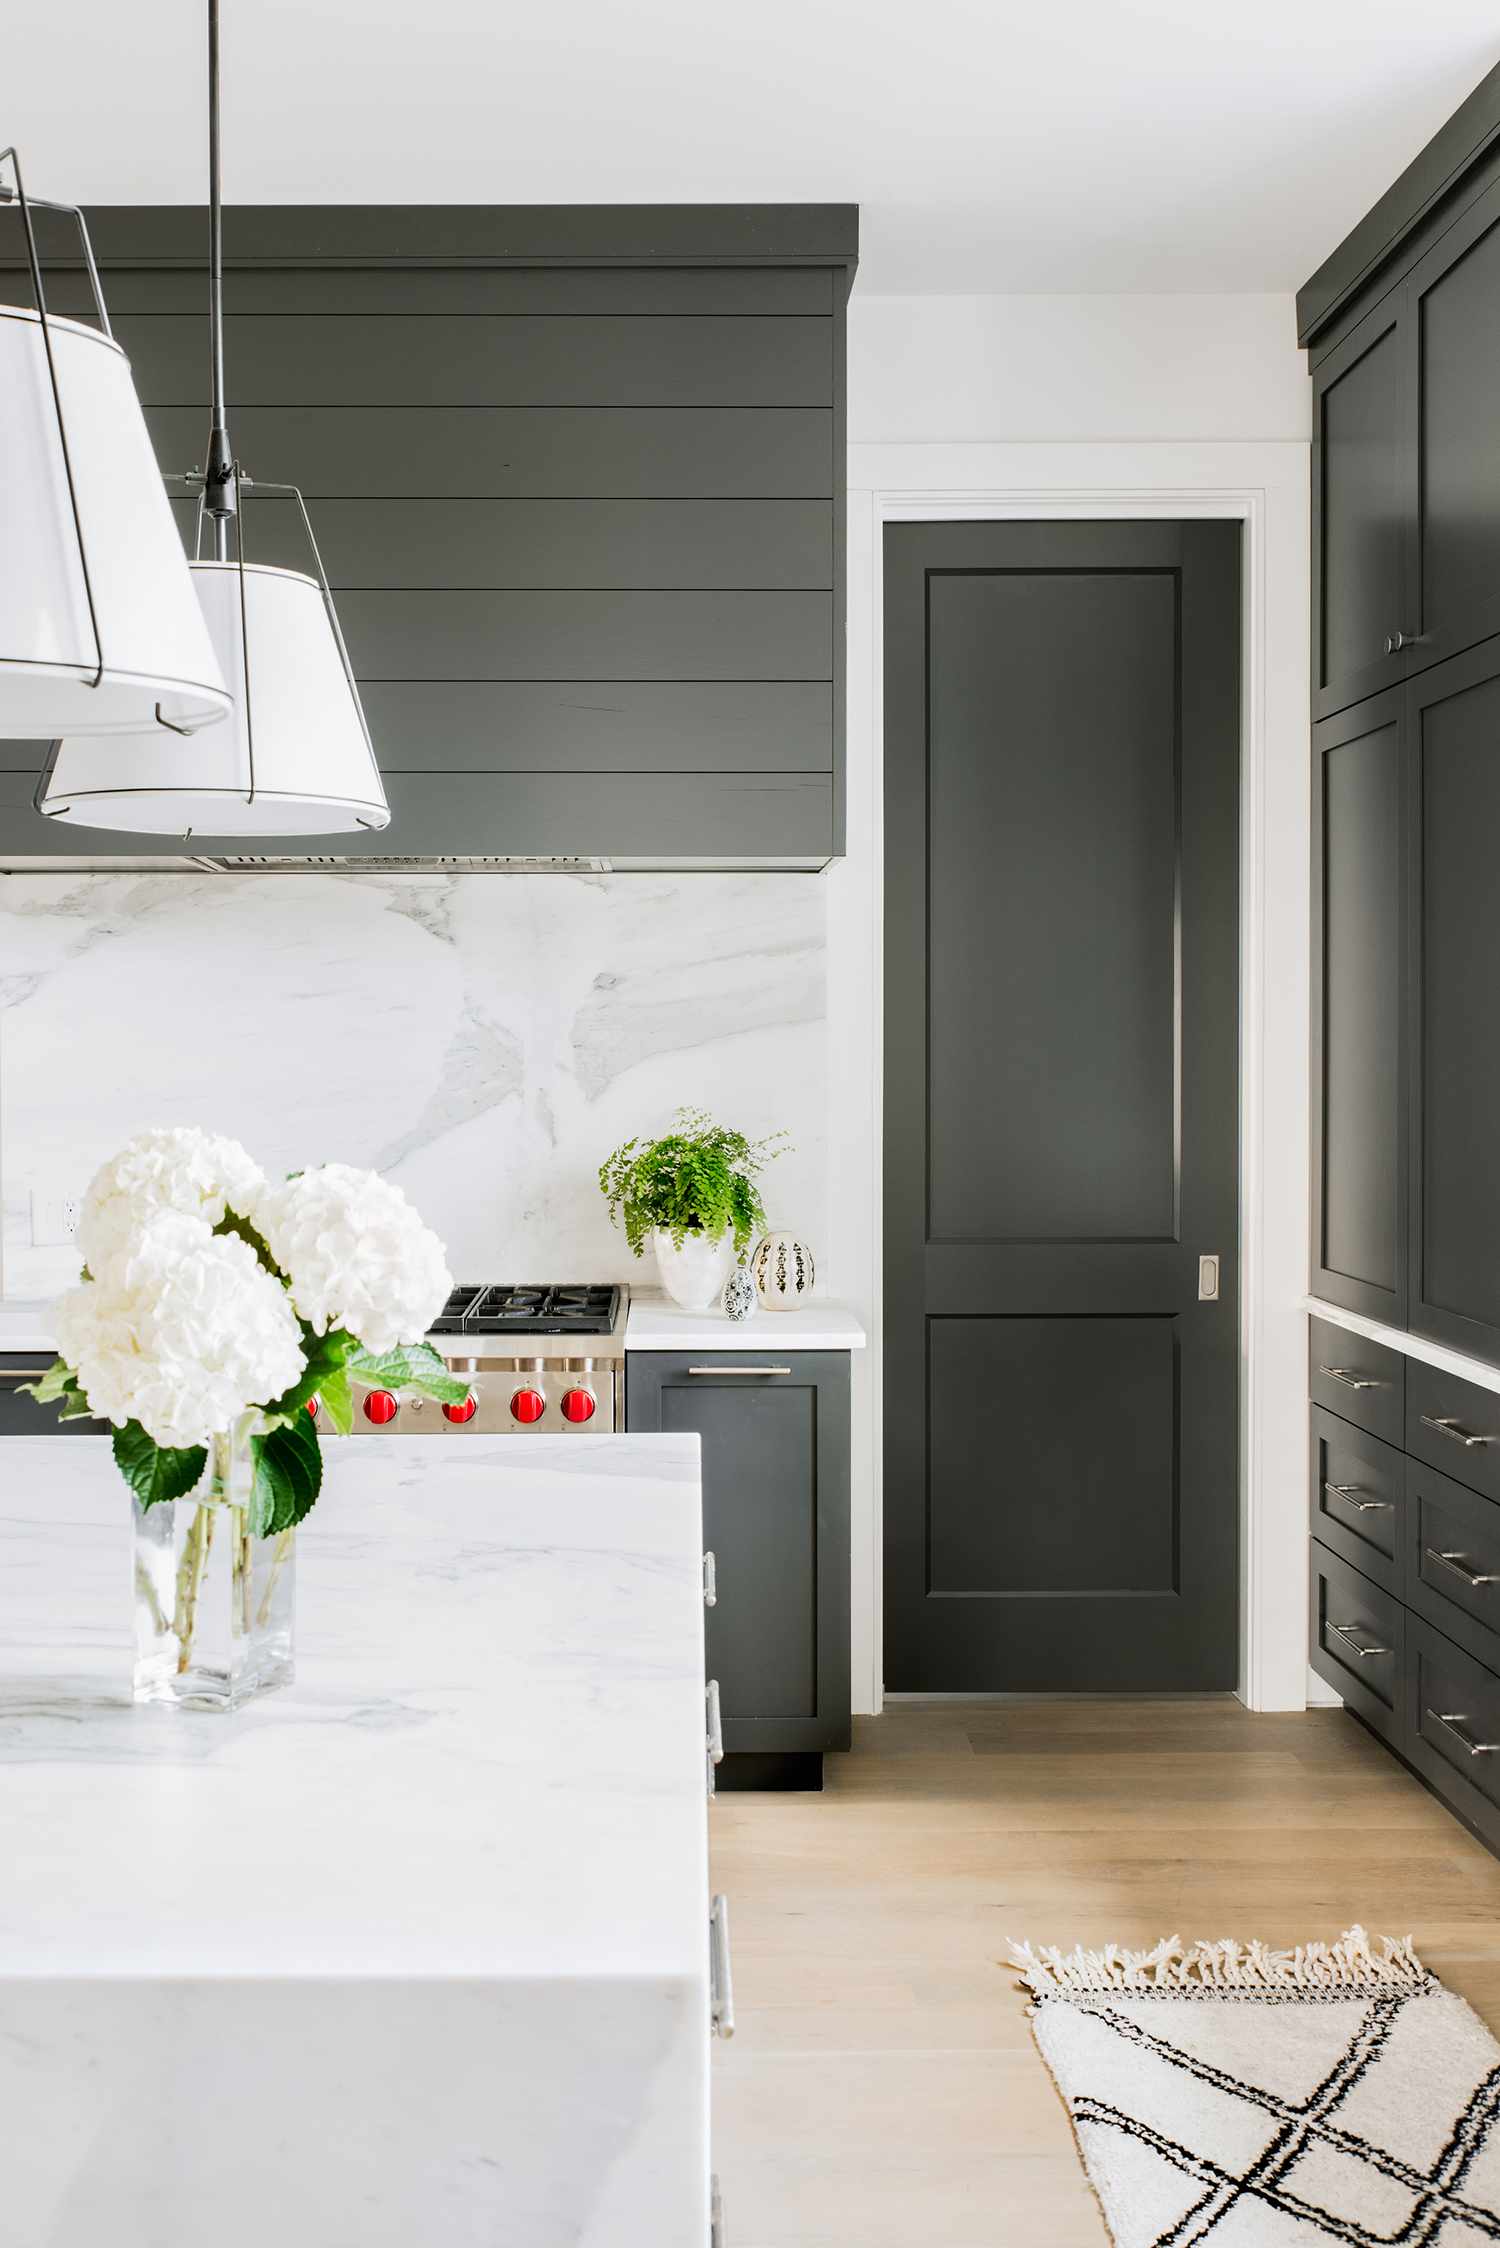 Spotlight On Kitchen Backsplash Trends Interior Designs Love Most Martha Stewart